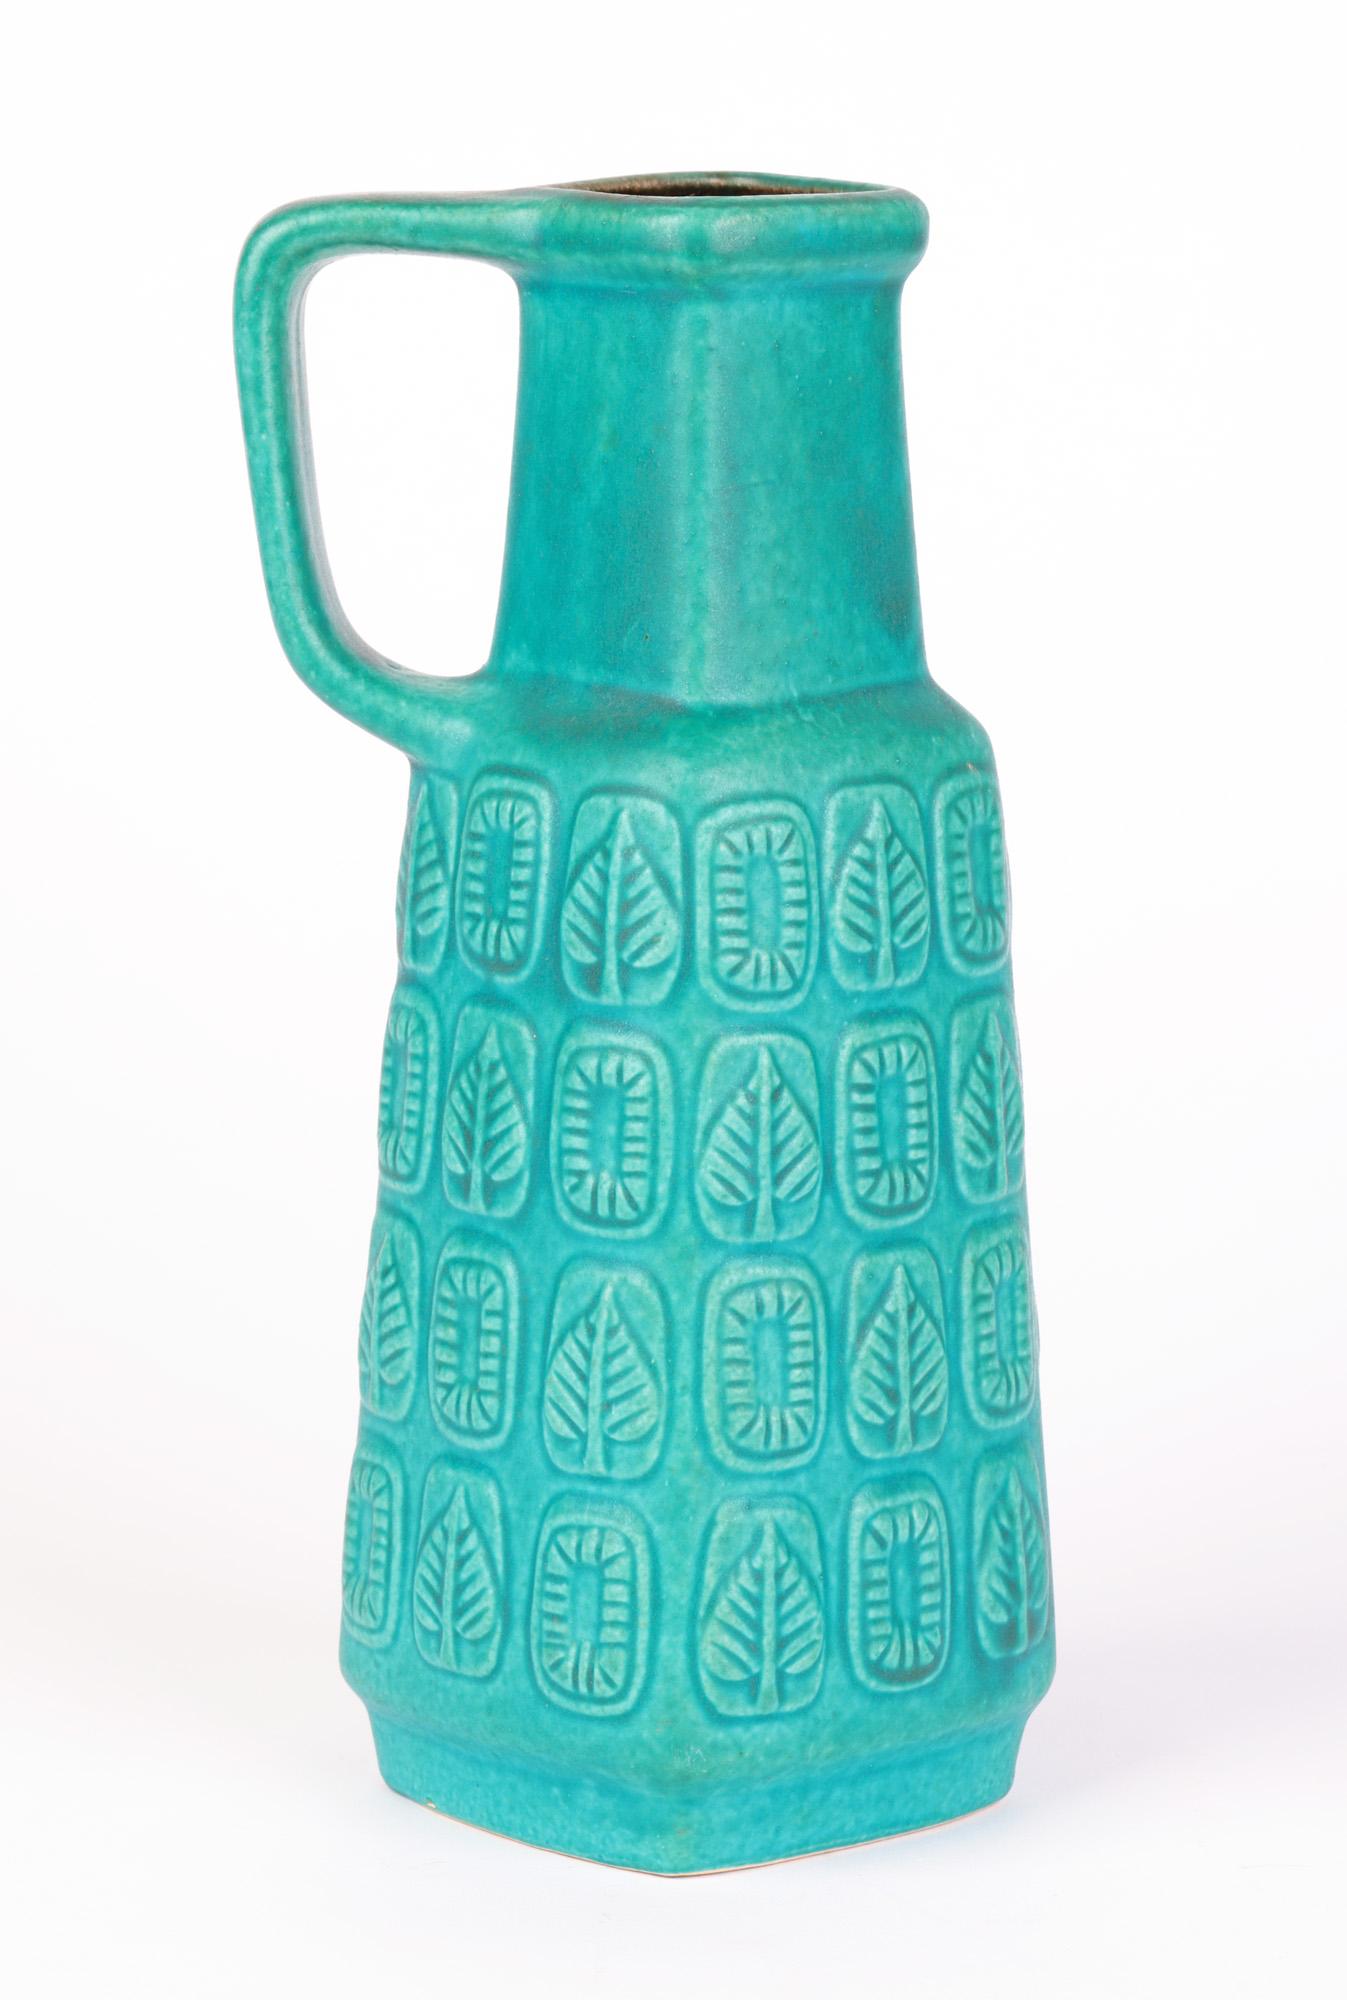 Bay Keramik German Mid-Century Turquoise Glazed Molded Pottery Vase 8